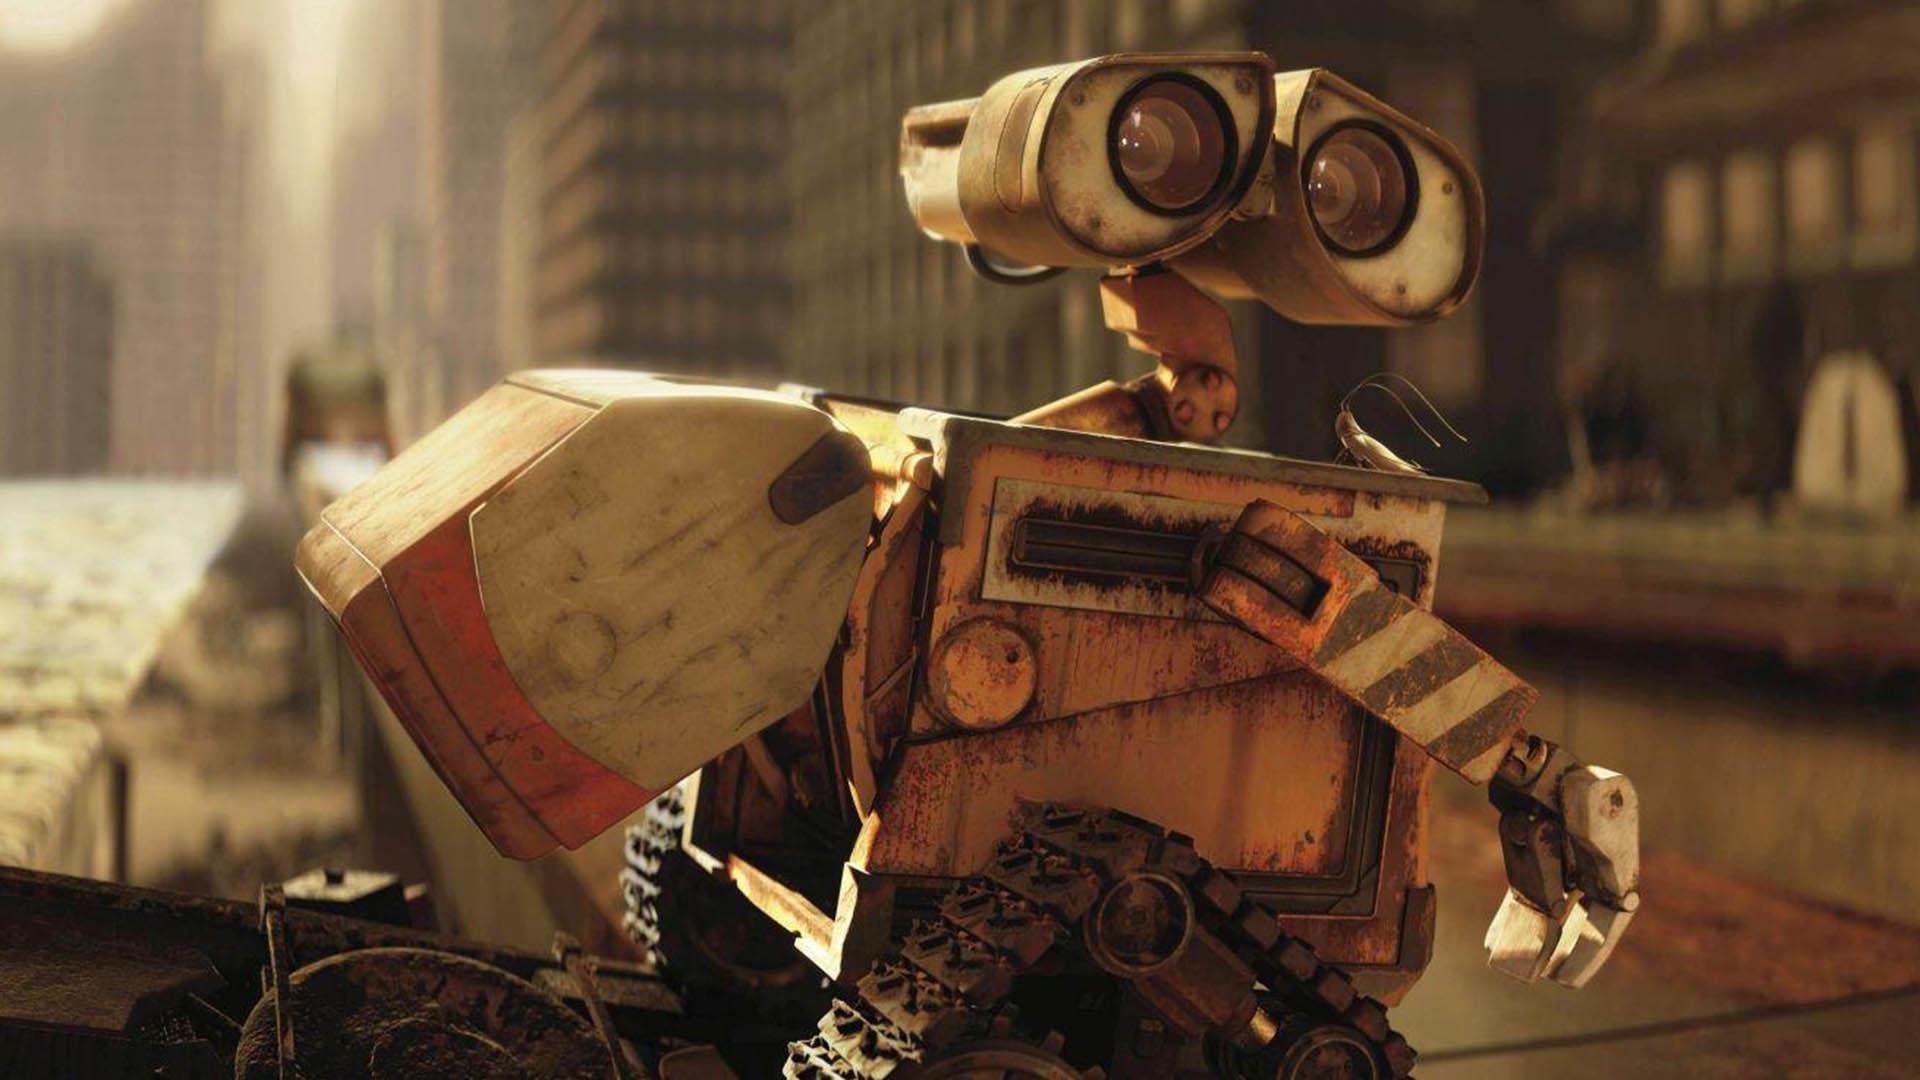 وال-ای به‌همراه دوست و همراه همیشگی خود در وسط یک خیابان در فیلم Wall-e